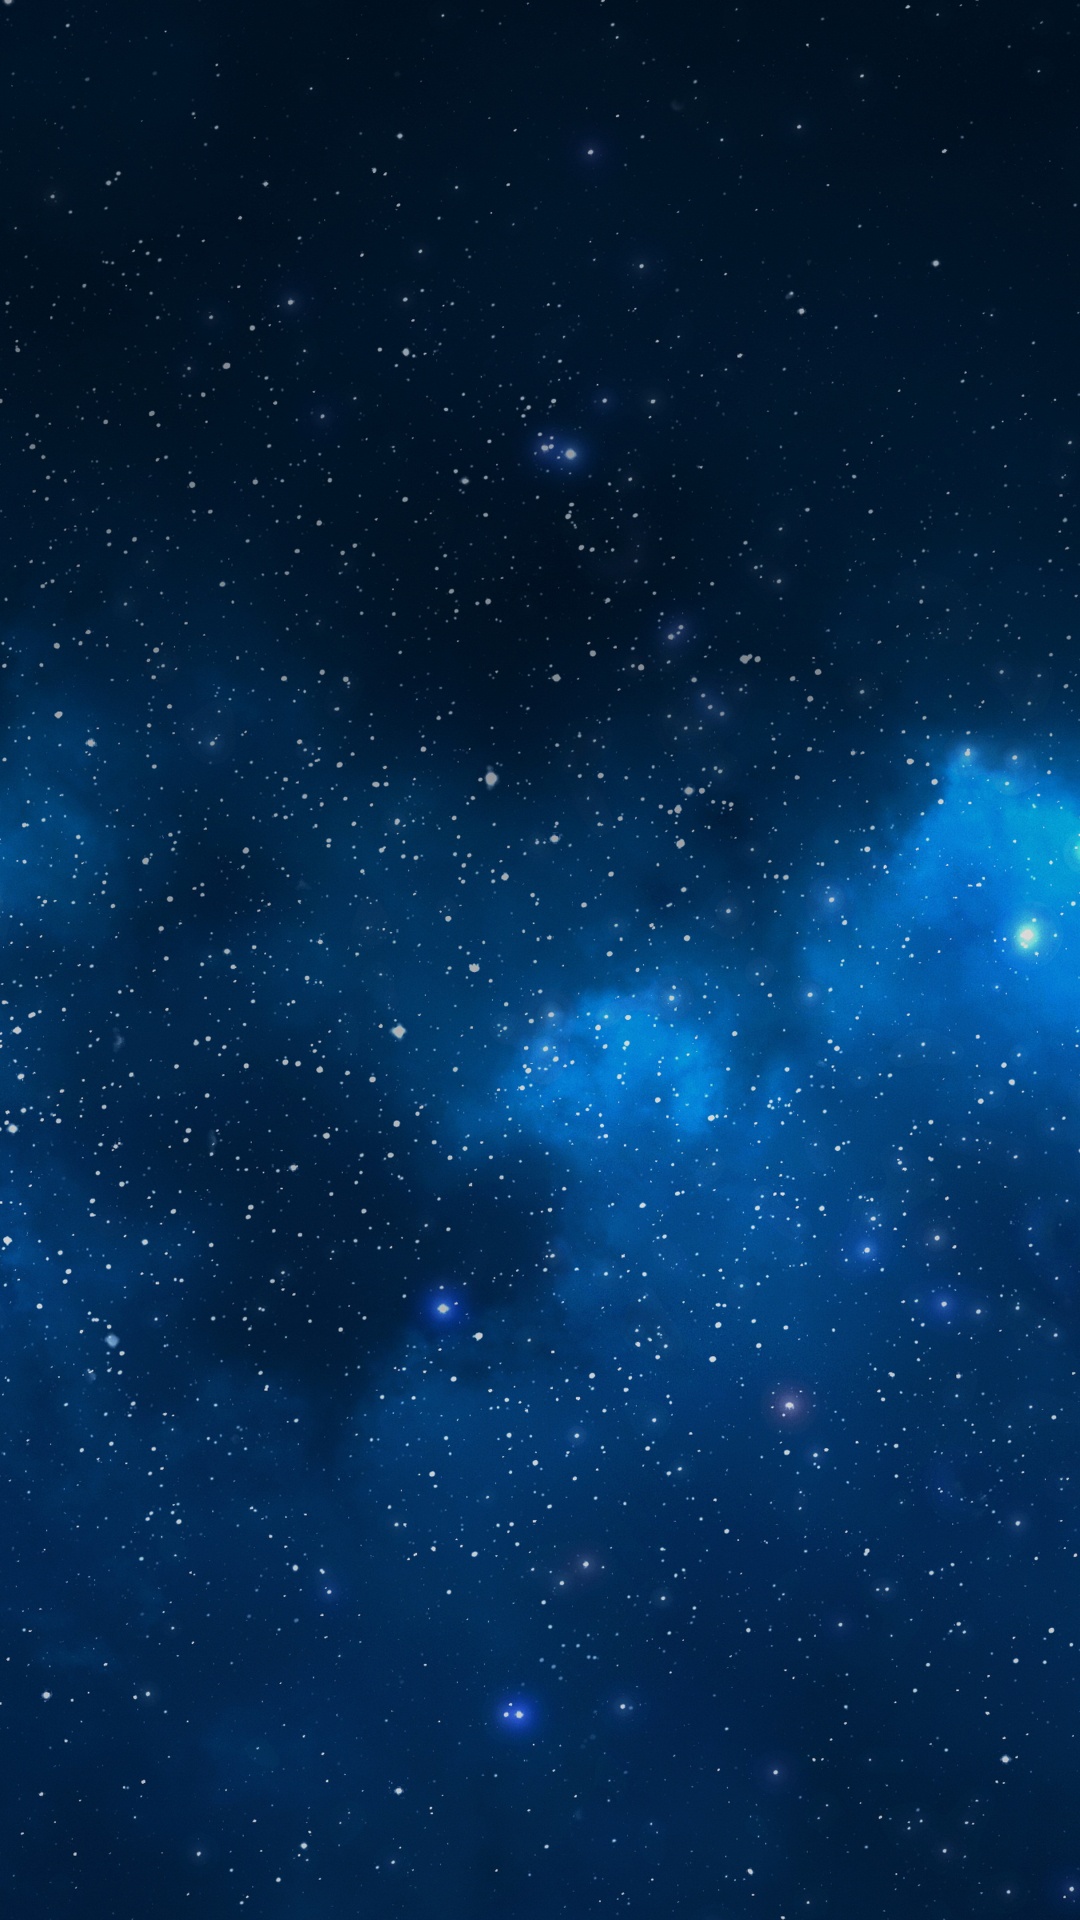 天文学对象, 外层空间, 空间, 夜晚的天空, 明星 壁纸 1080x1920 允许